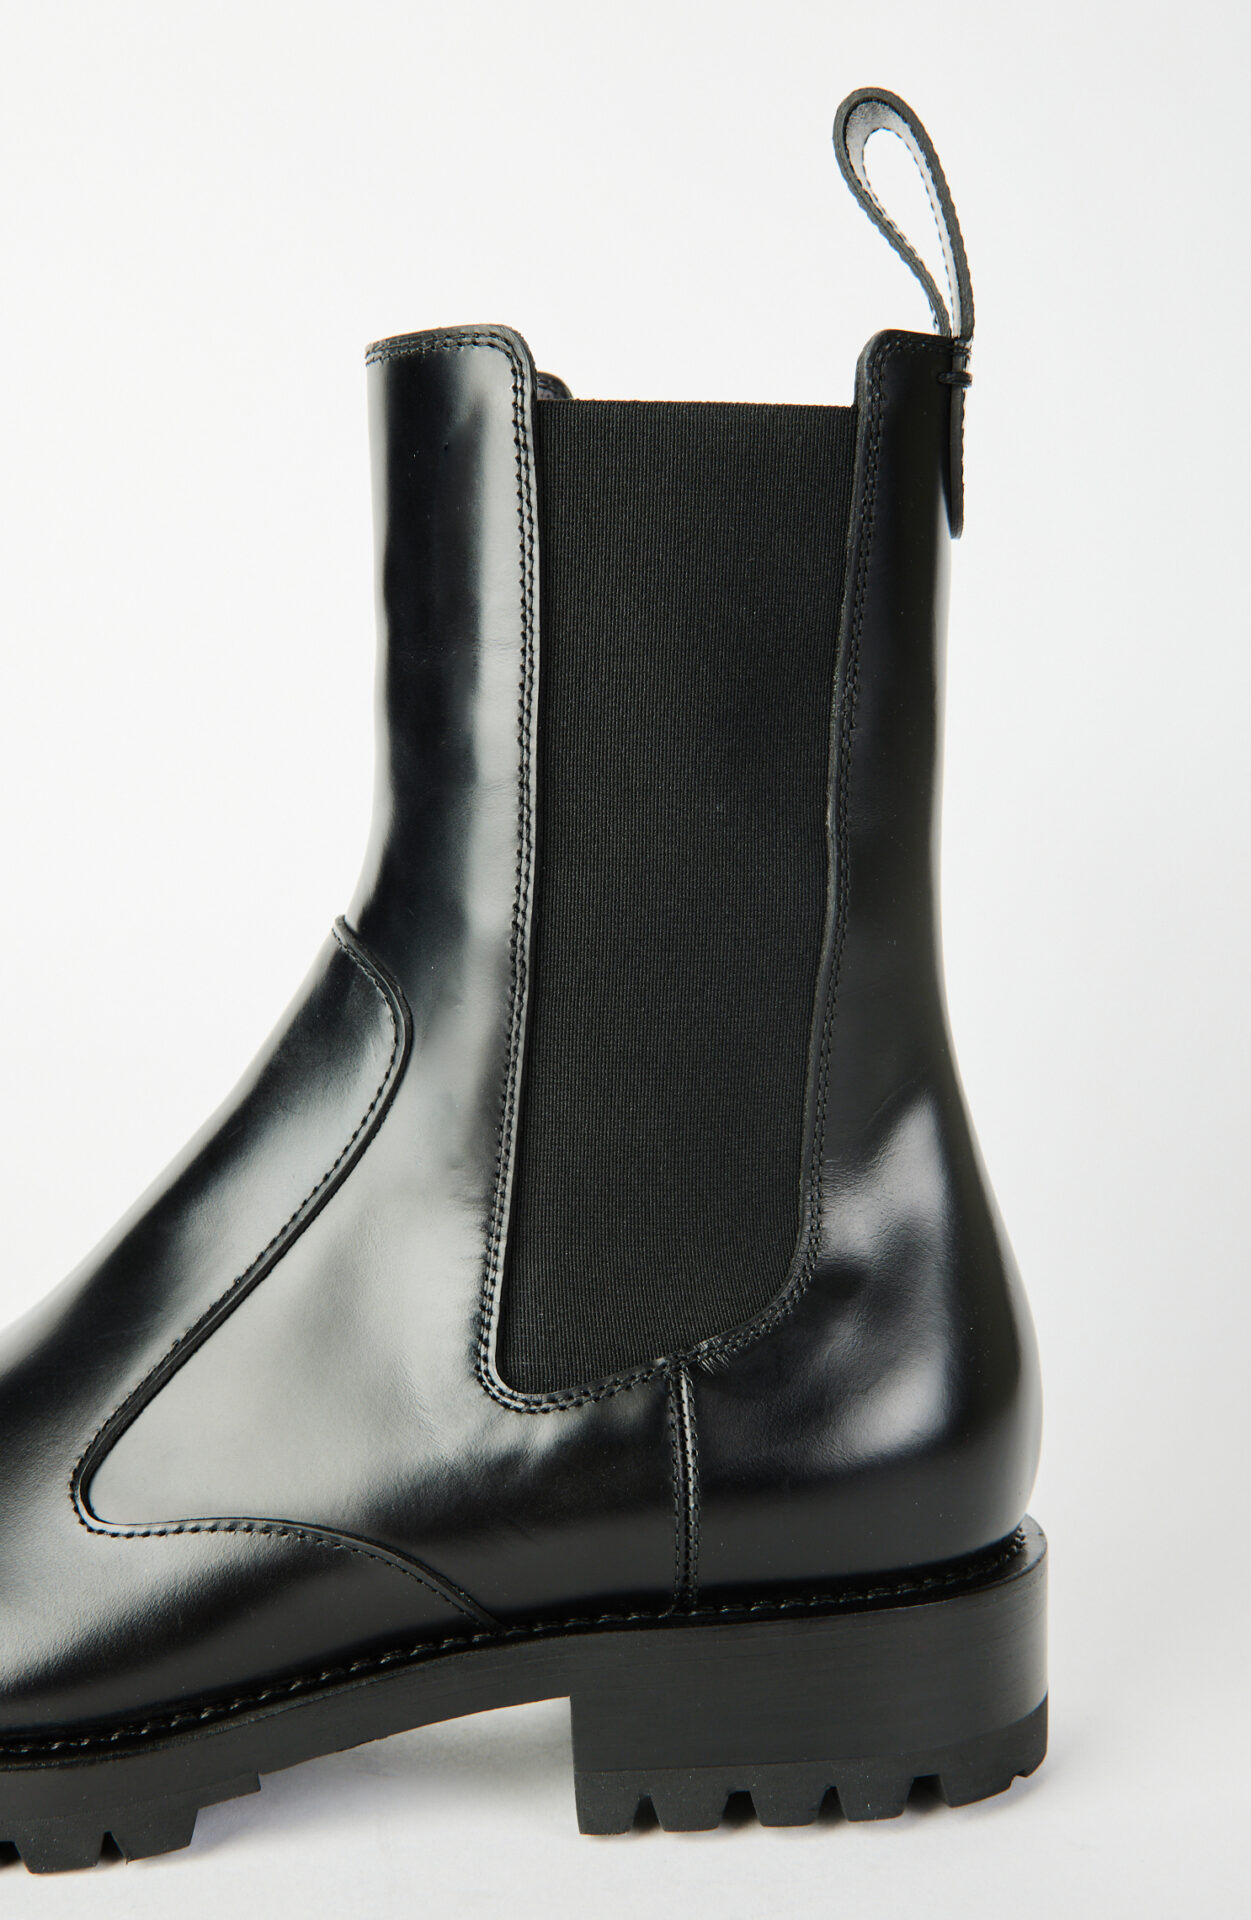 Dries van Noten - Black leather chelsea boots - Schwittenberg